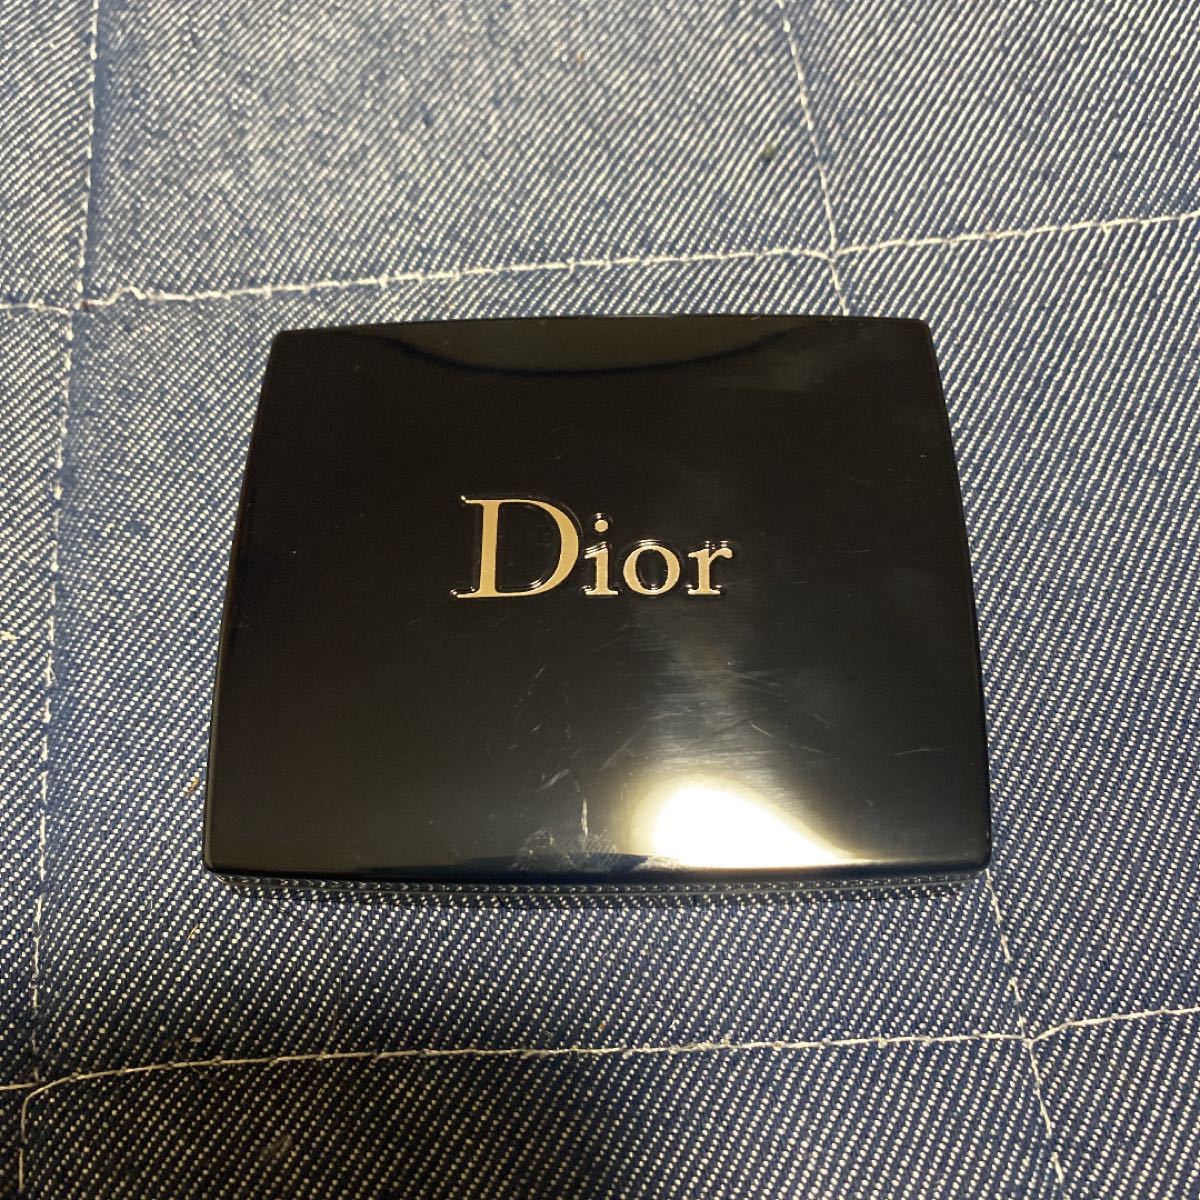 Dior サンク クルール アイシャドウ 757